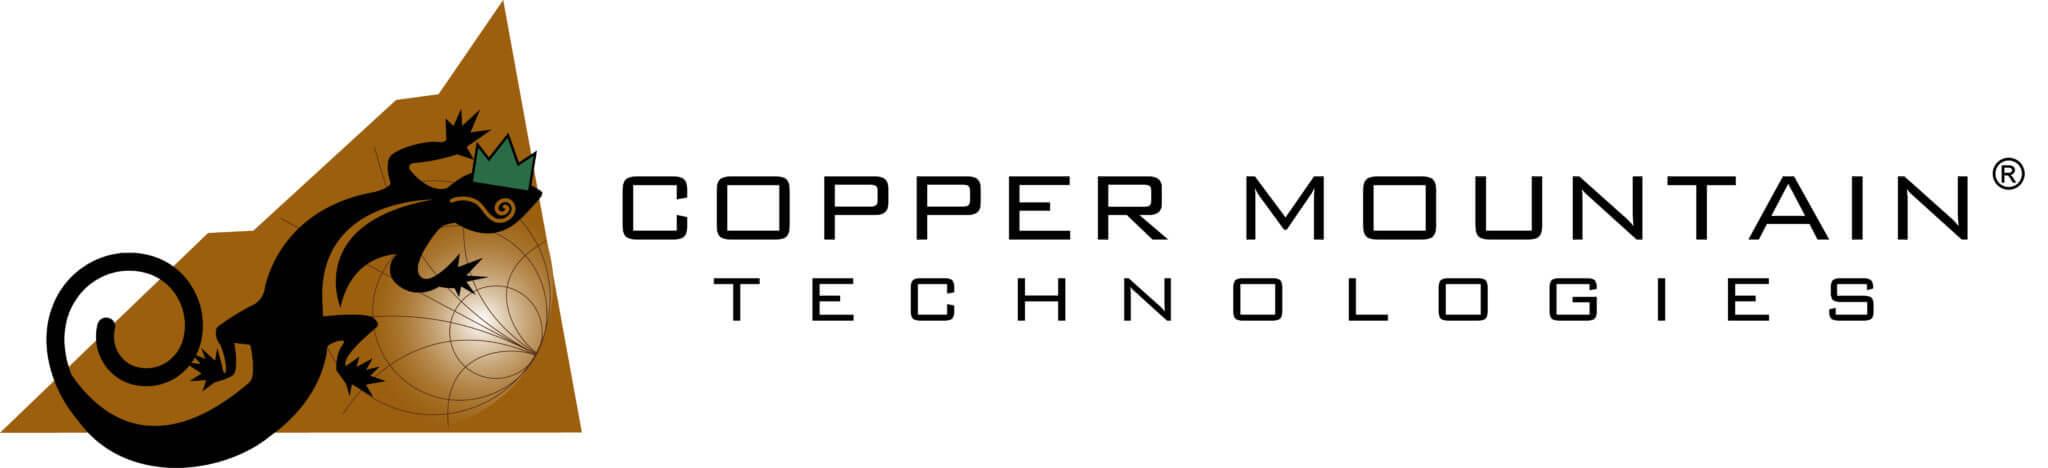 Copper Mountain Logo - Copper Mountain Technologies